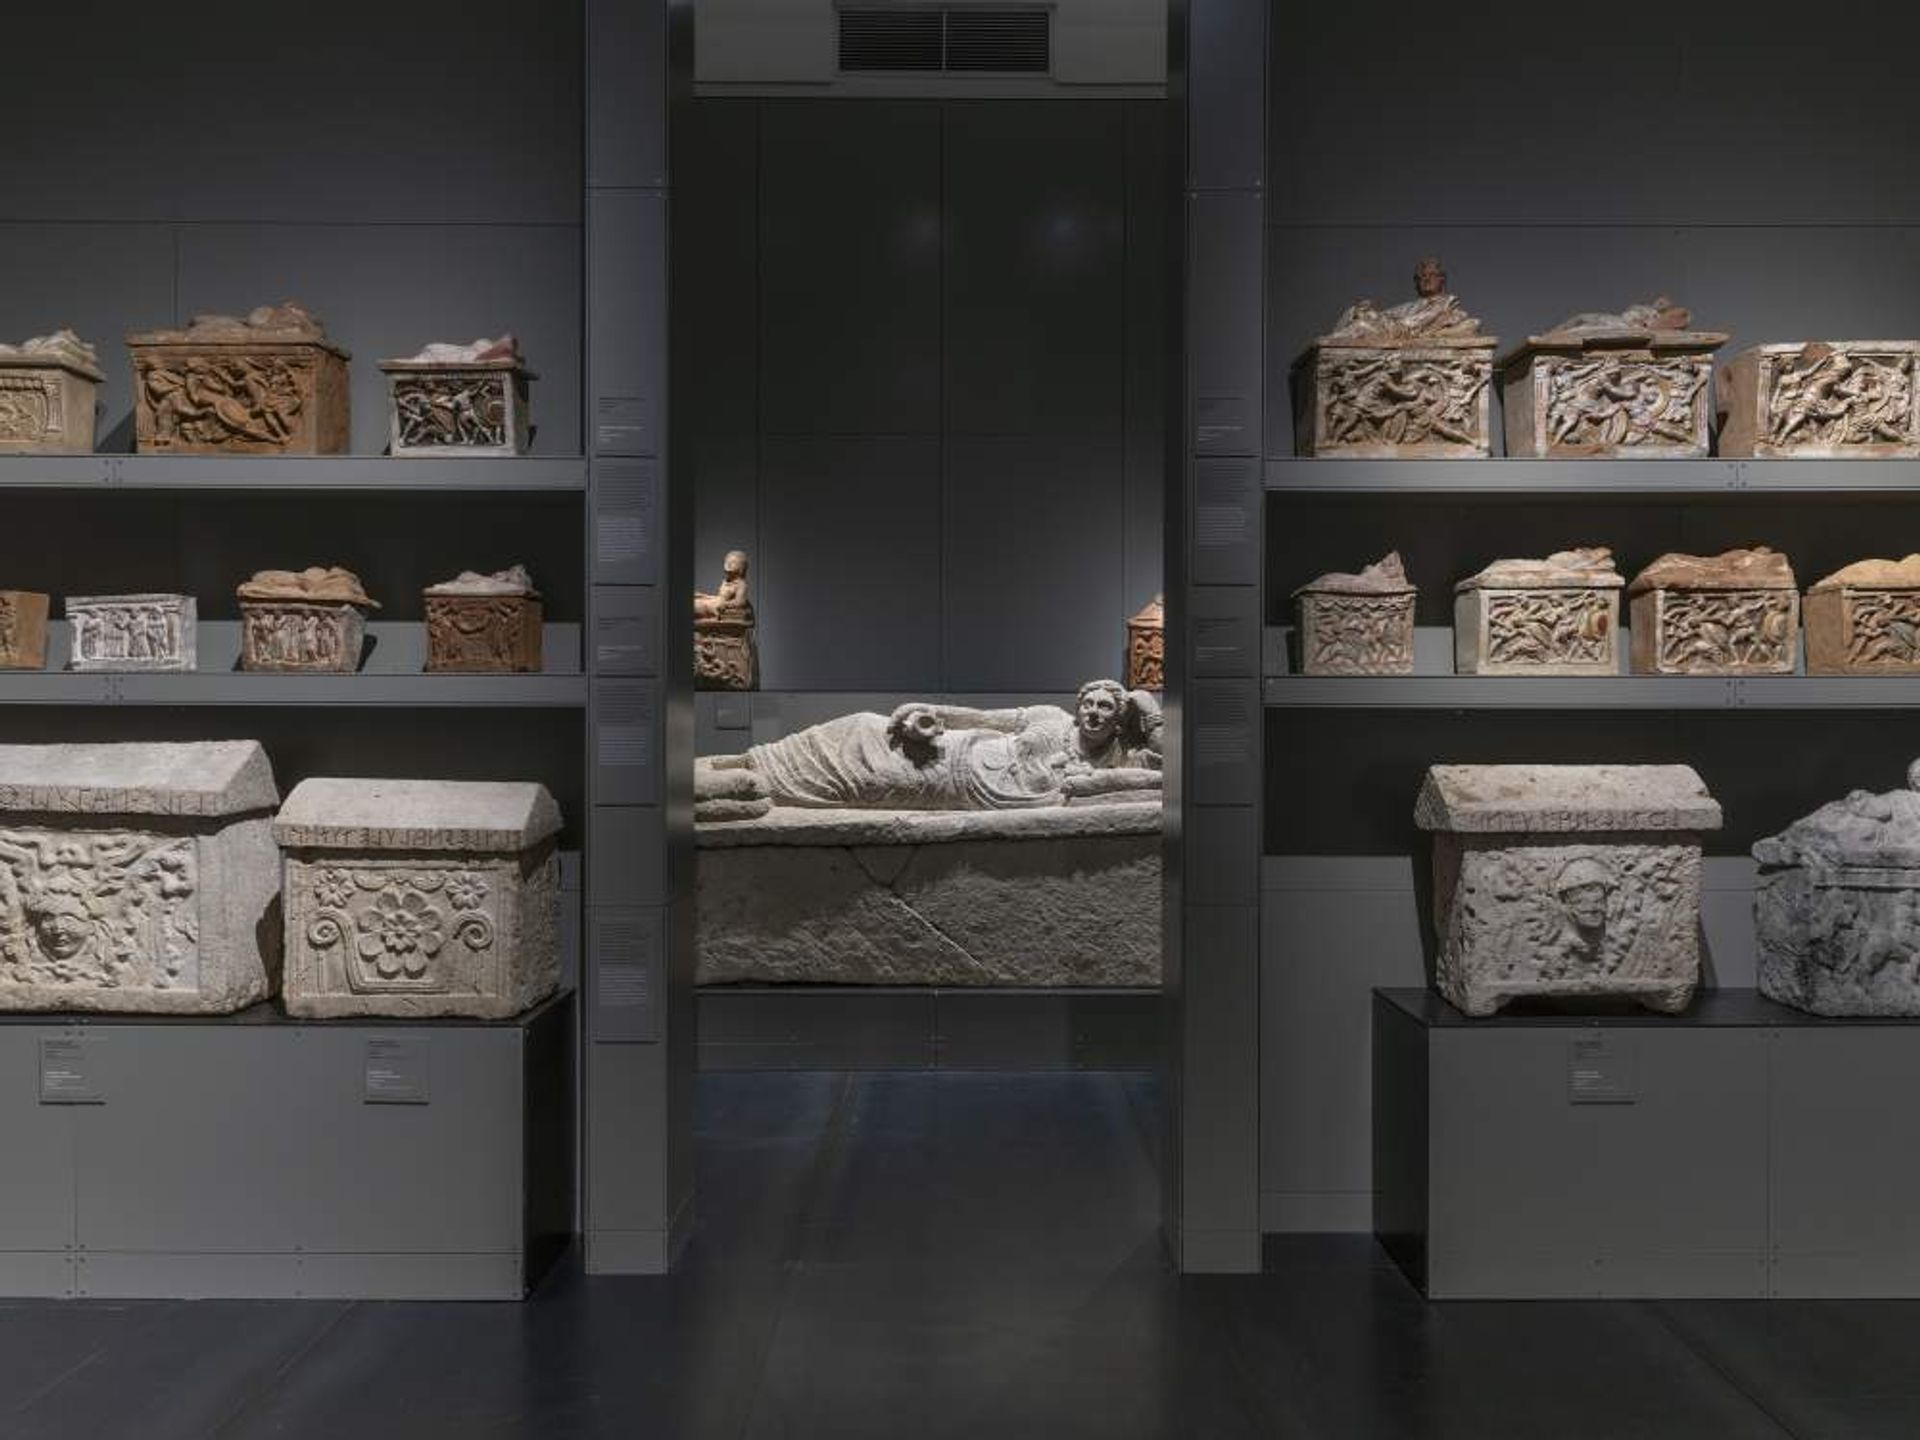 החדר האטרוסקי עם קברו של ה- Matausni

© Musei Reali Torino